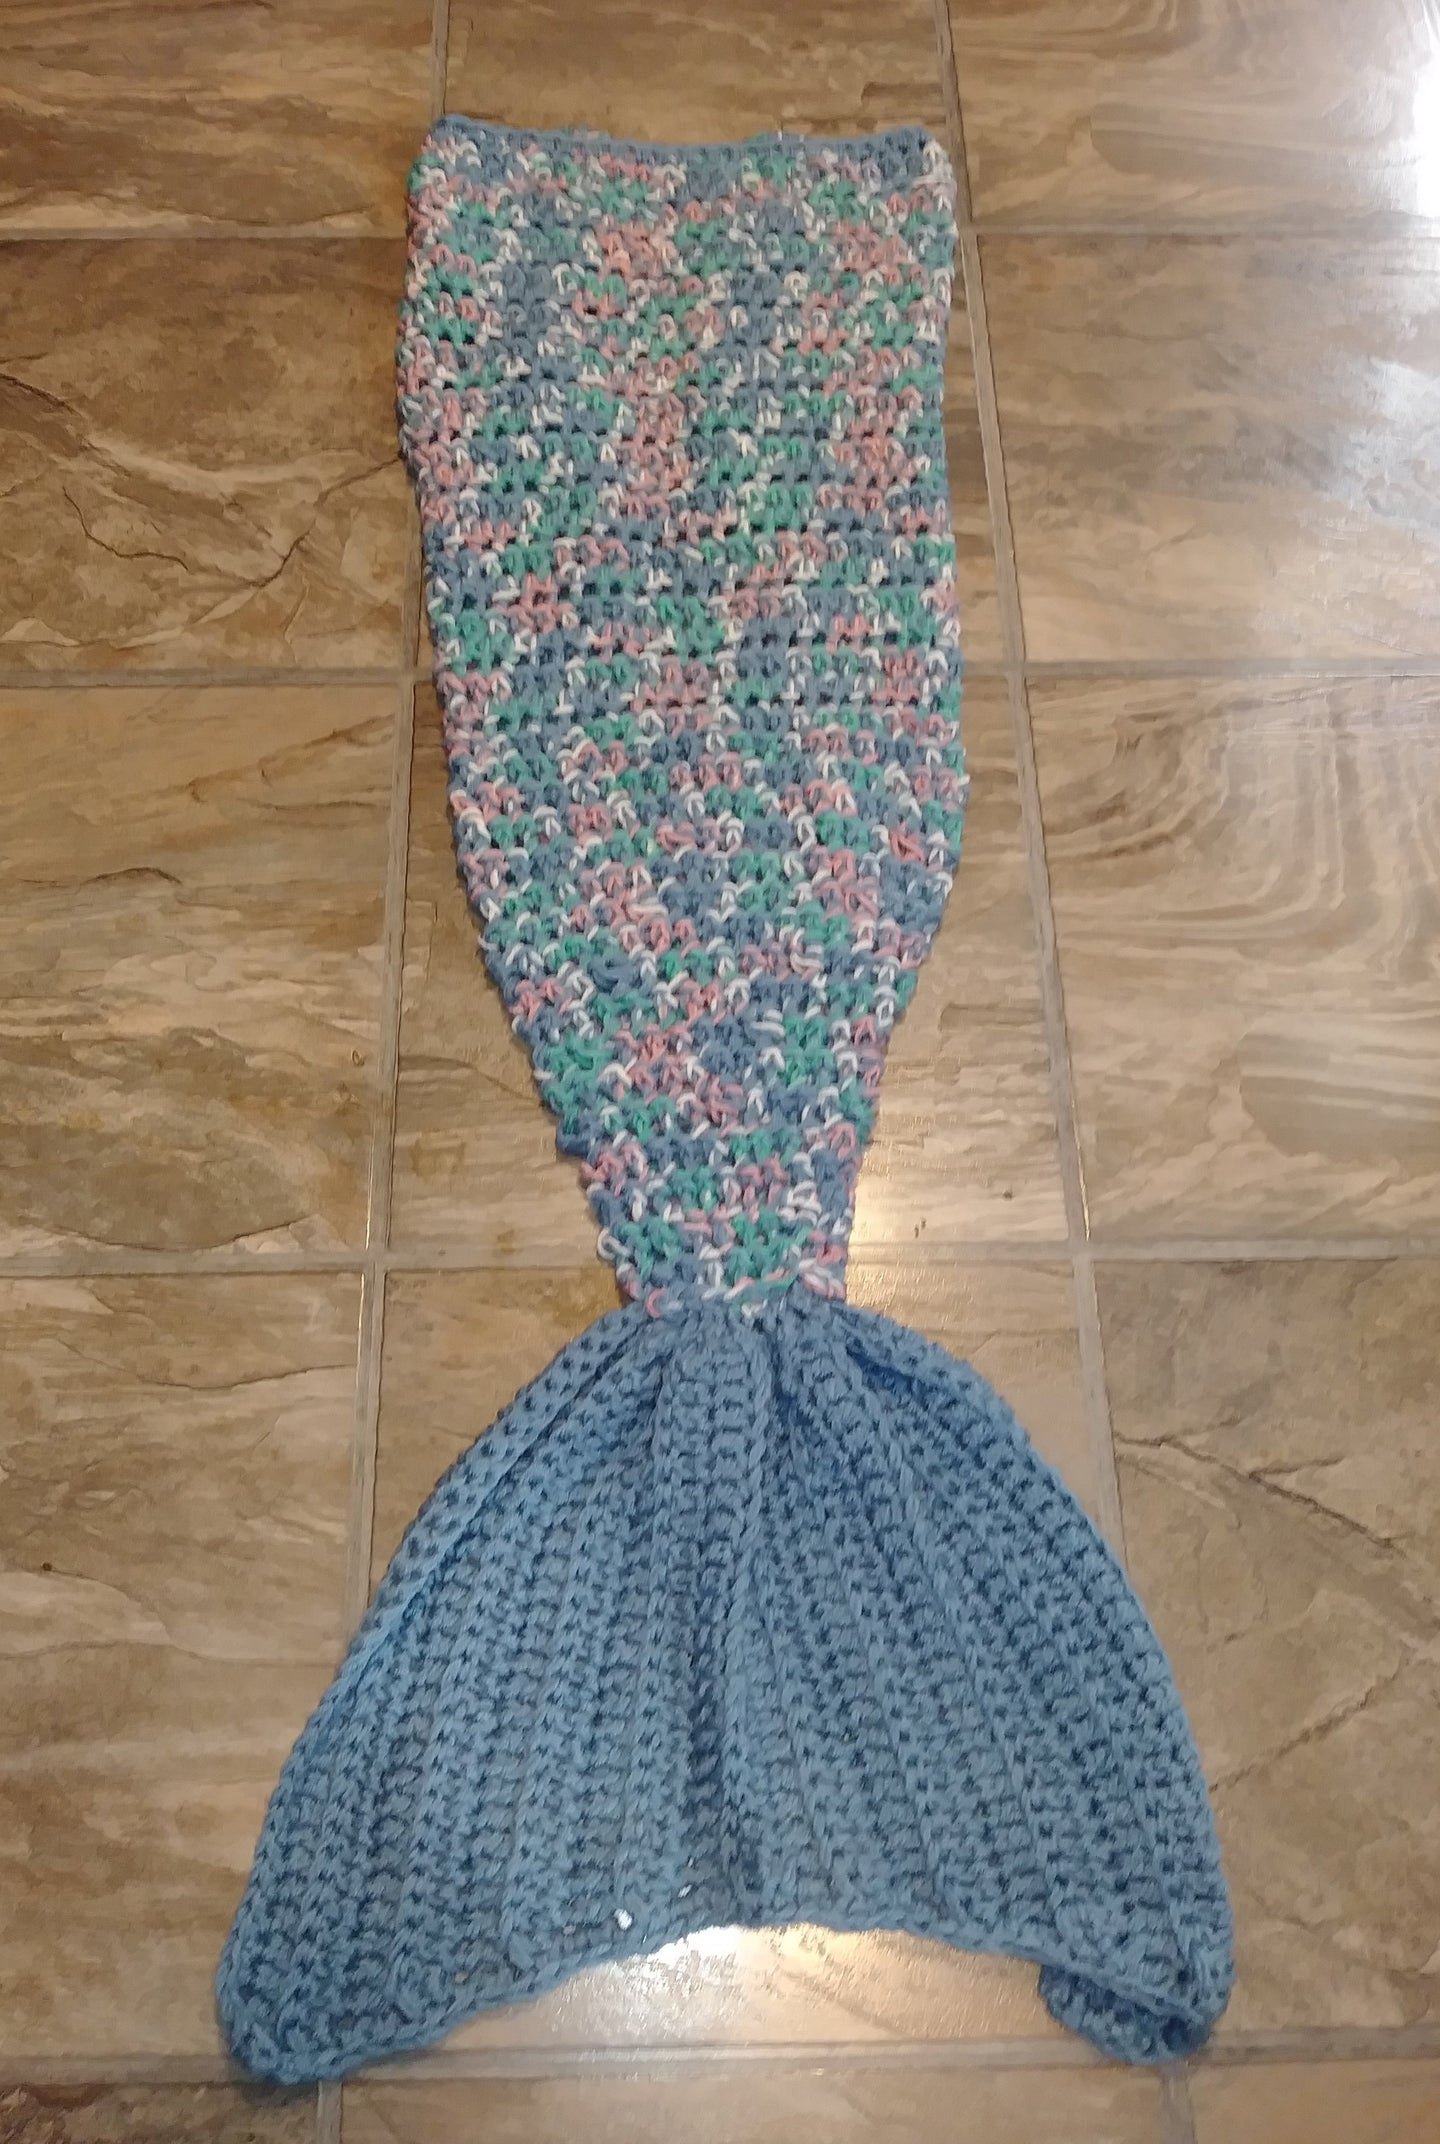 Cottage Garden Girl's Mermaid Tail Snuggler Blanket